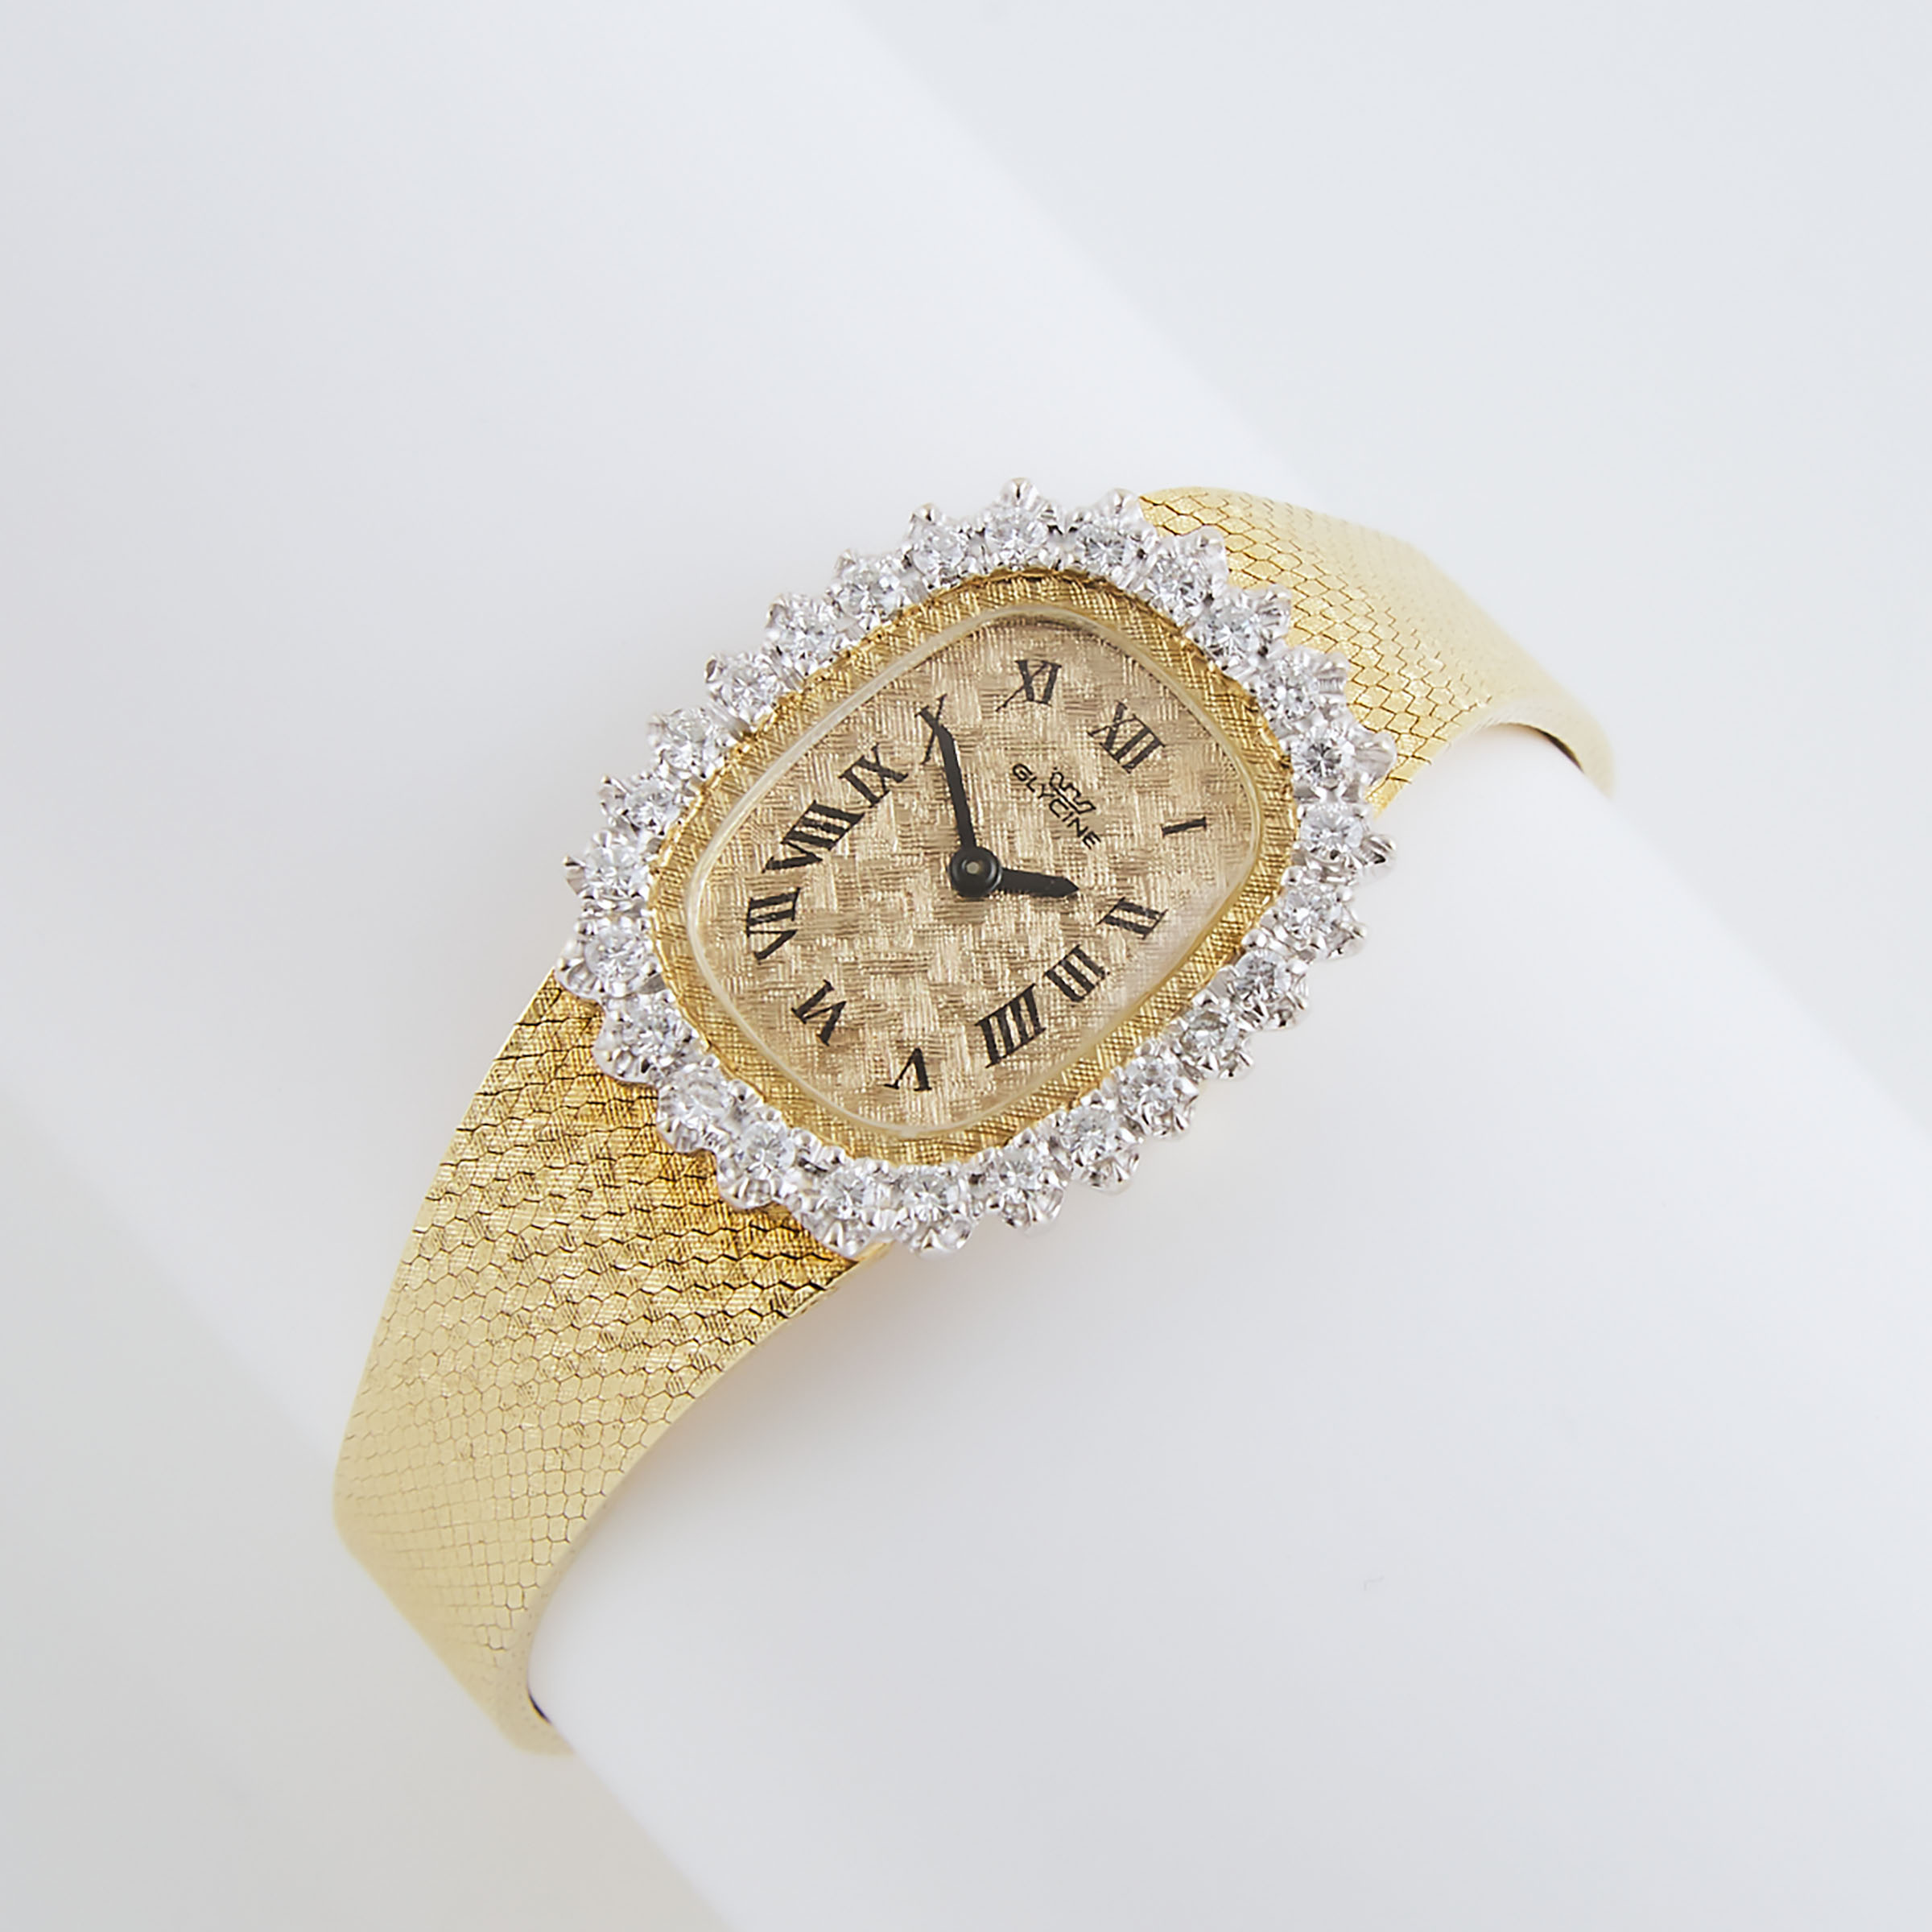 Lady's Glycine Wristwatch